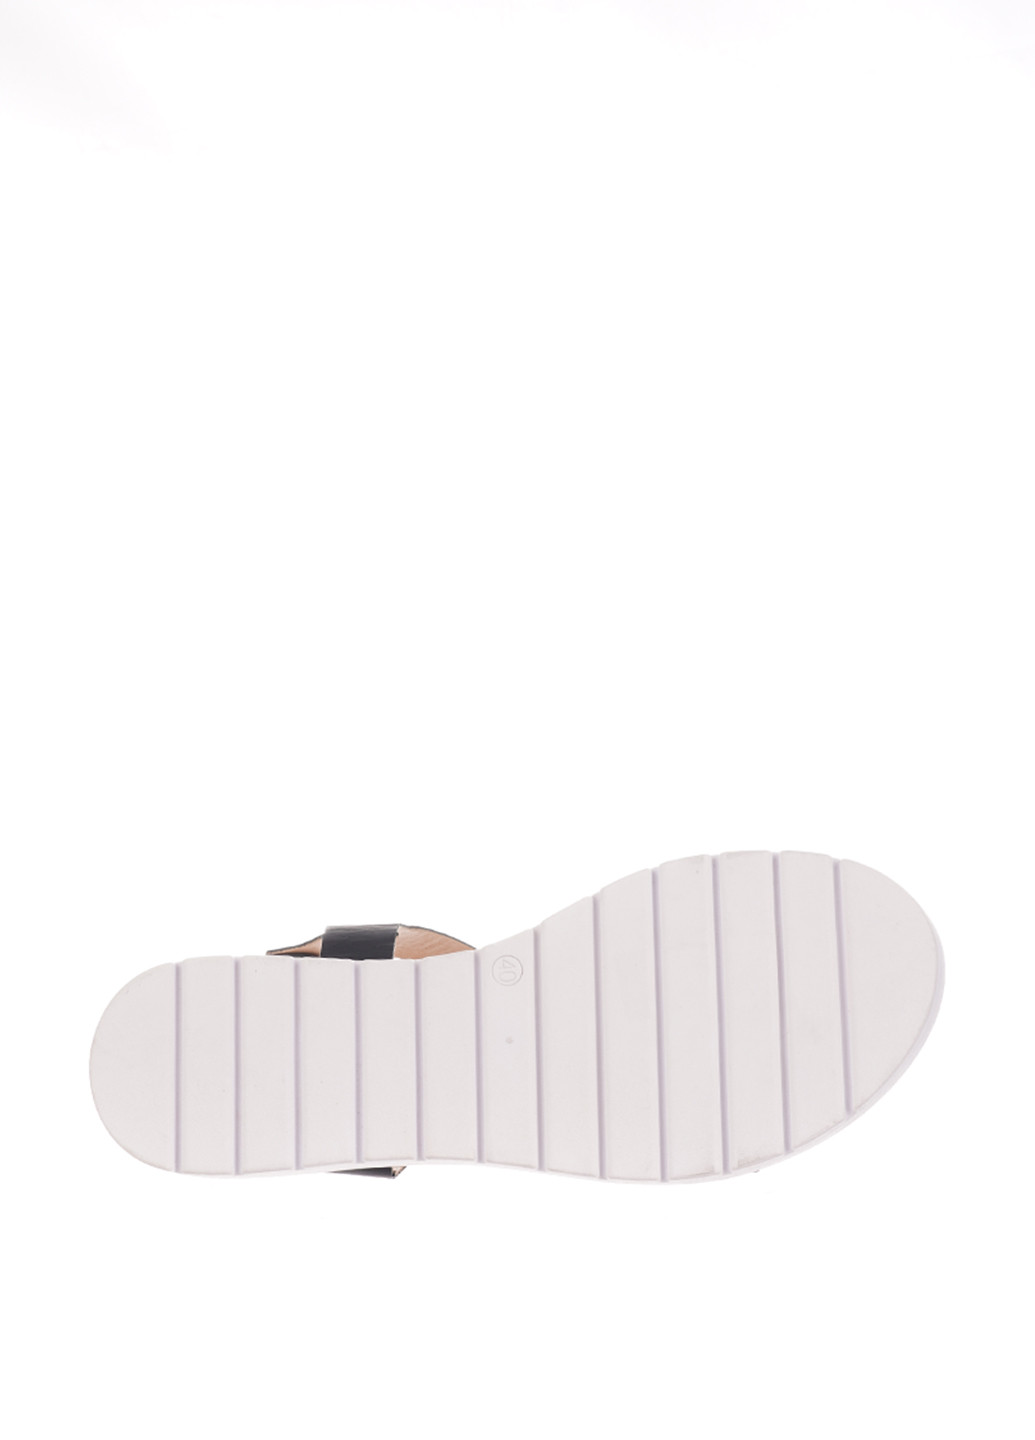 Черно-белые босоножки Bellini с ремешком с белой подошвой